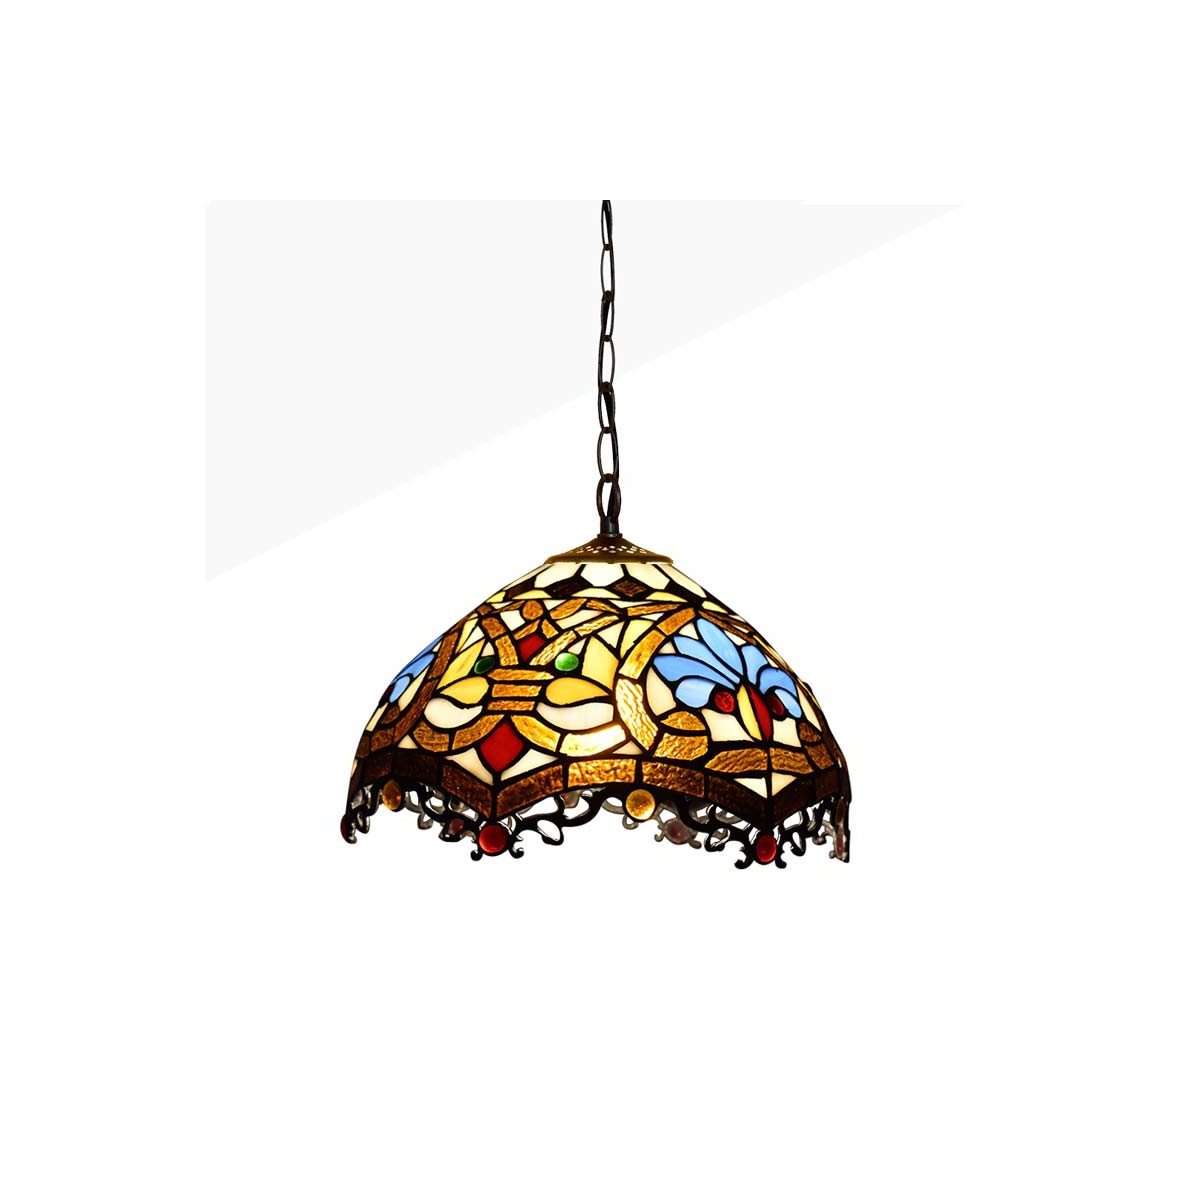 Lámpara colgante inspiración Tiffany con mosaico floral en cristal